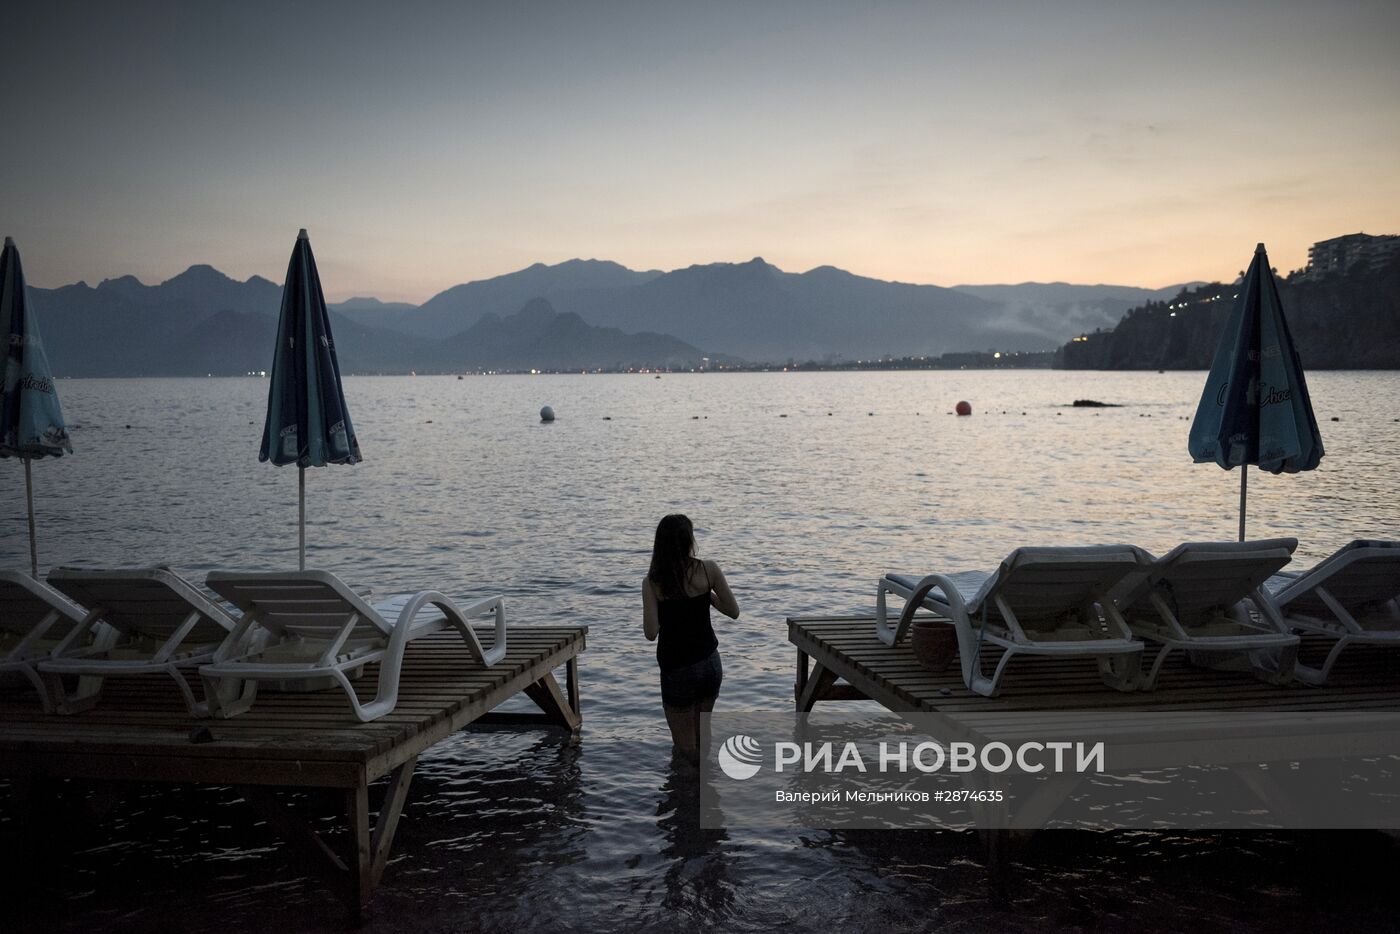 Ситуация на курортах Турции в связи со спадом туристического потока из России